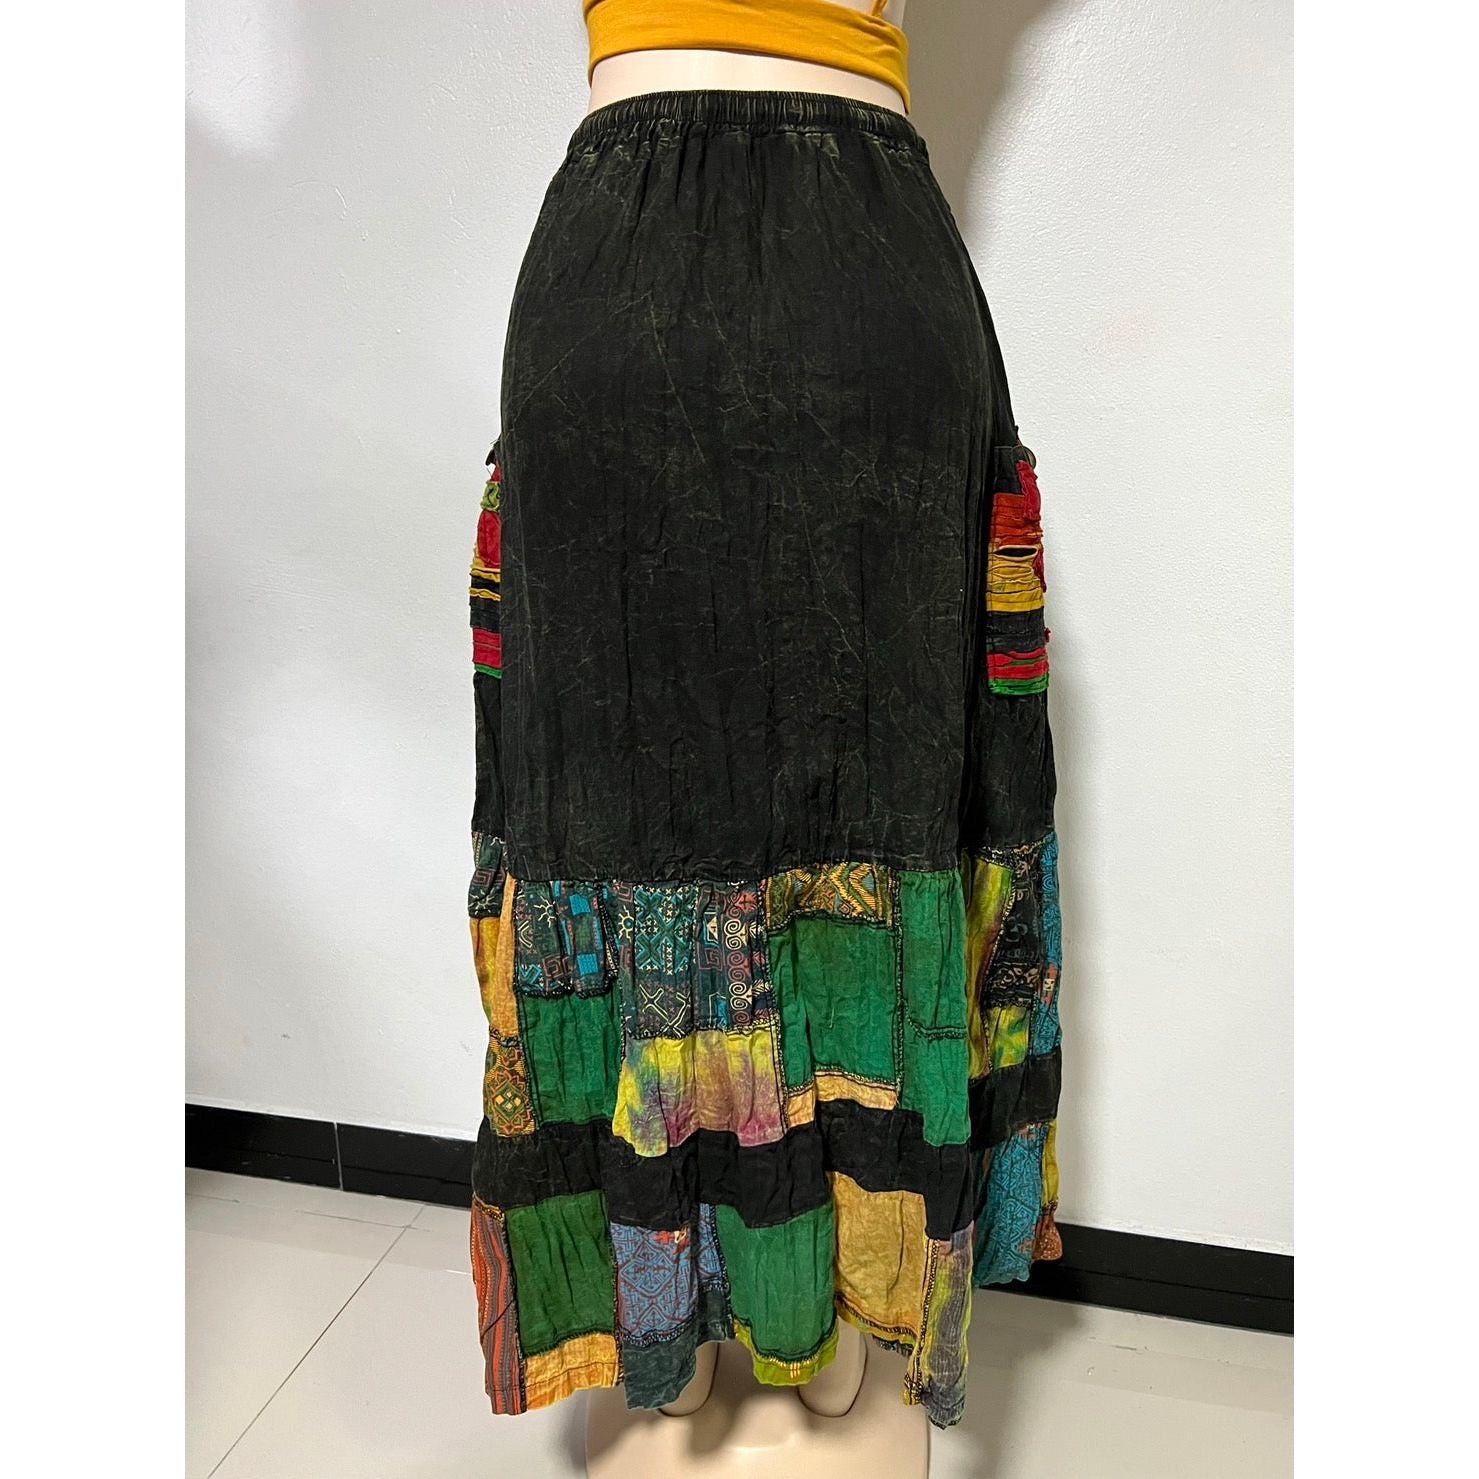 Beautiful Women Assorted Patch Skirt.